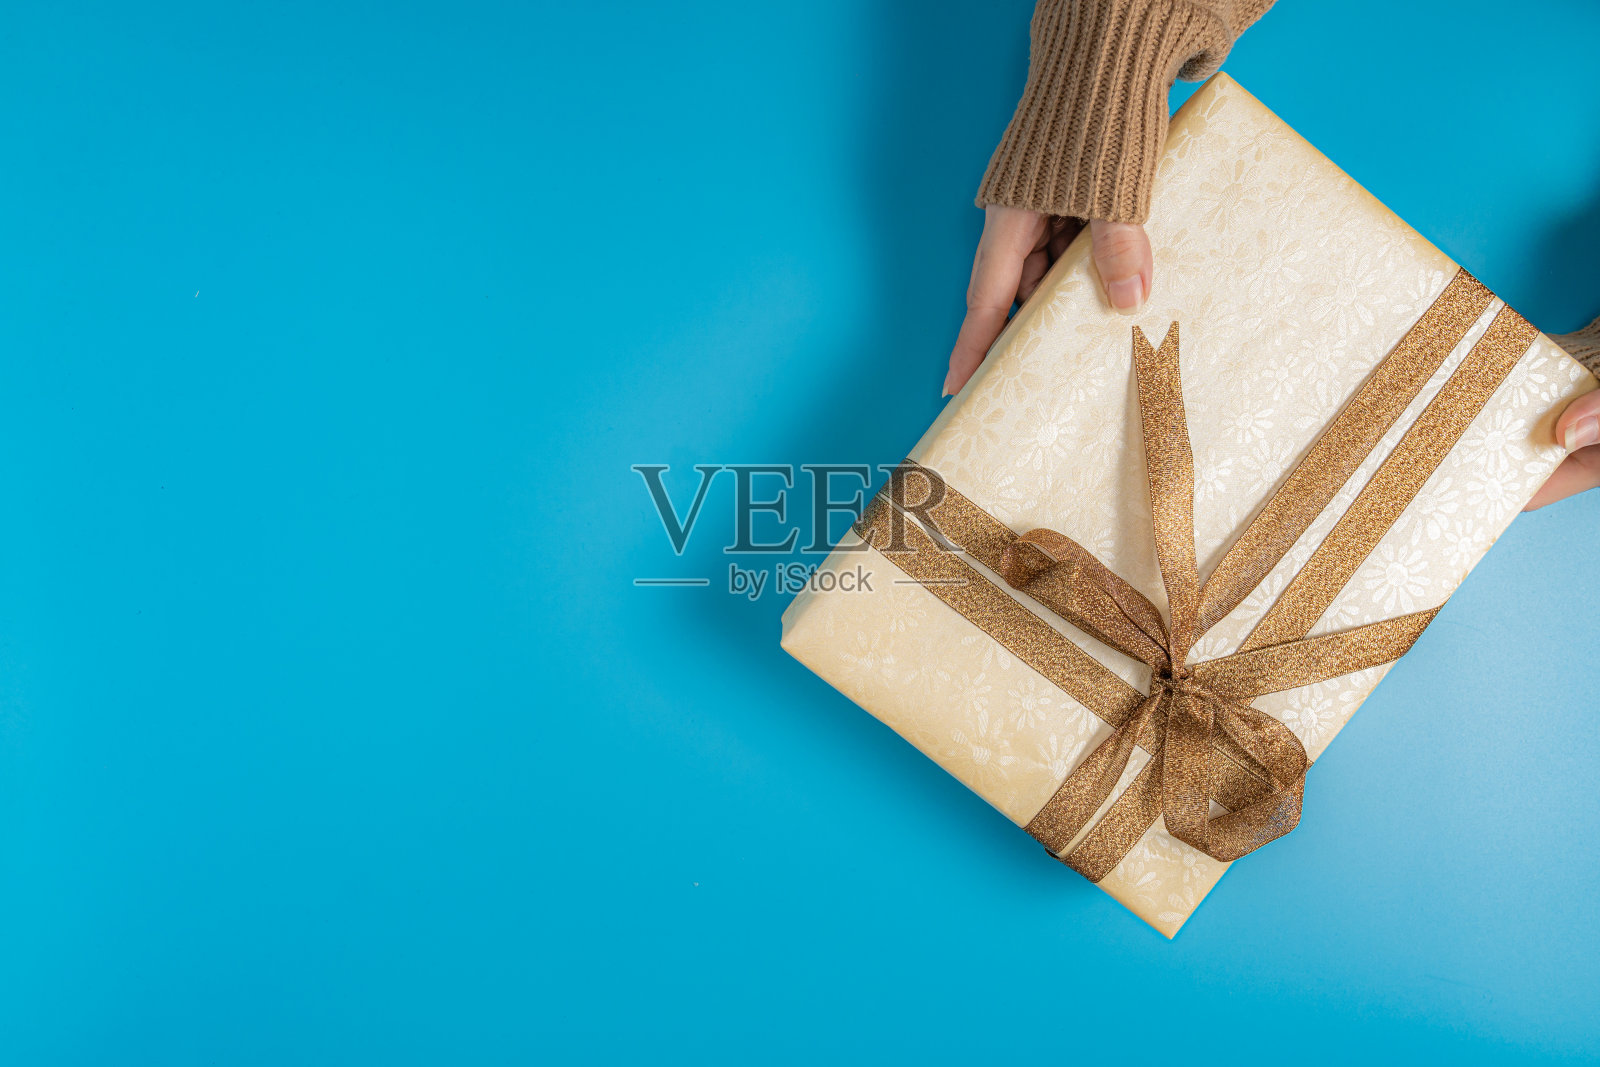 有人手穿一件棕色毛衣拿着一个礼品盒与棕色丝带系在蓝色背景位于右上角的图片照片摄影图片